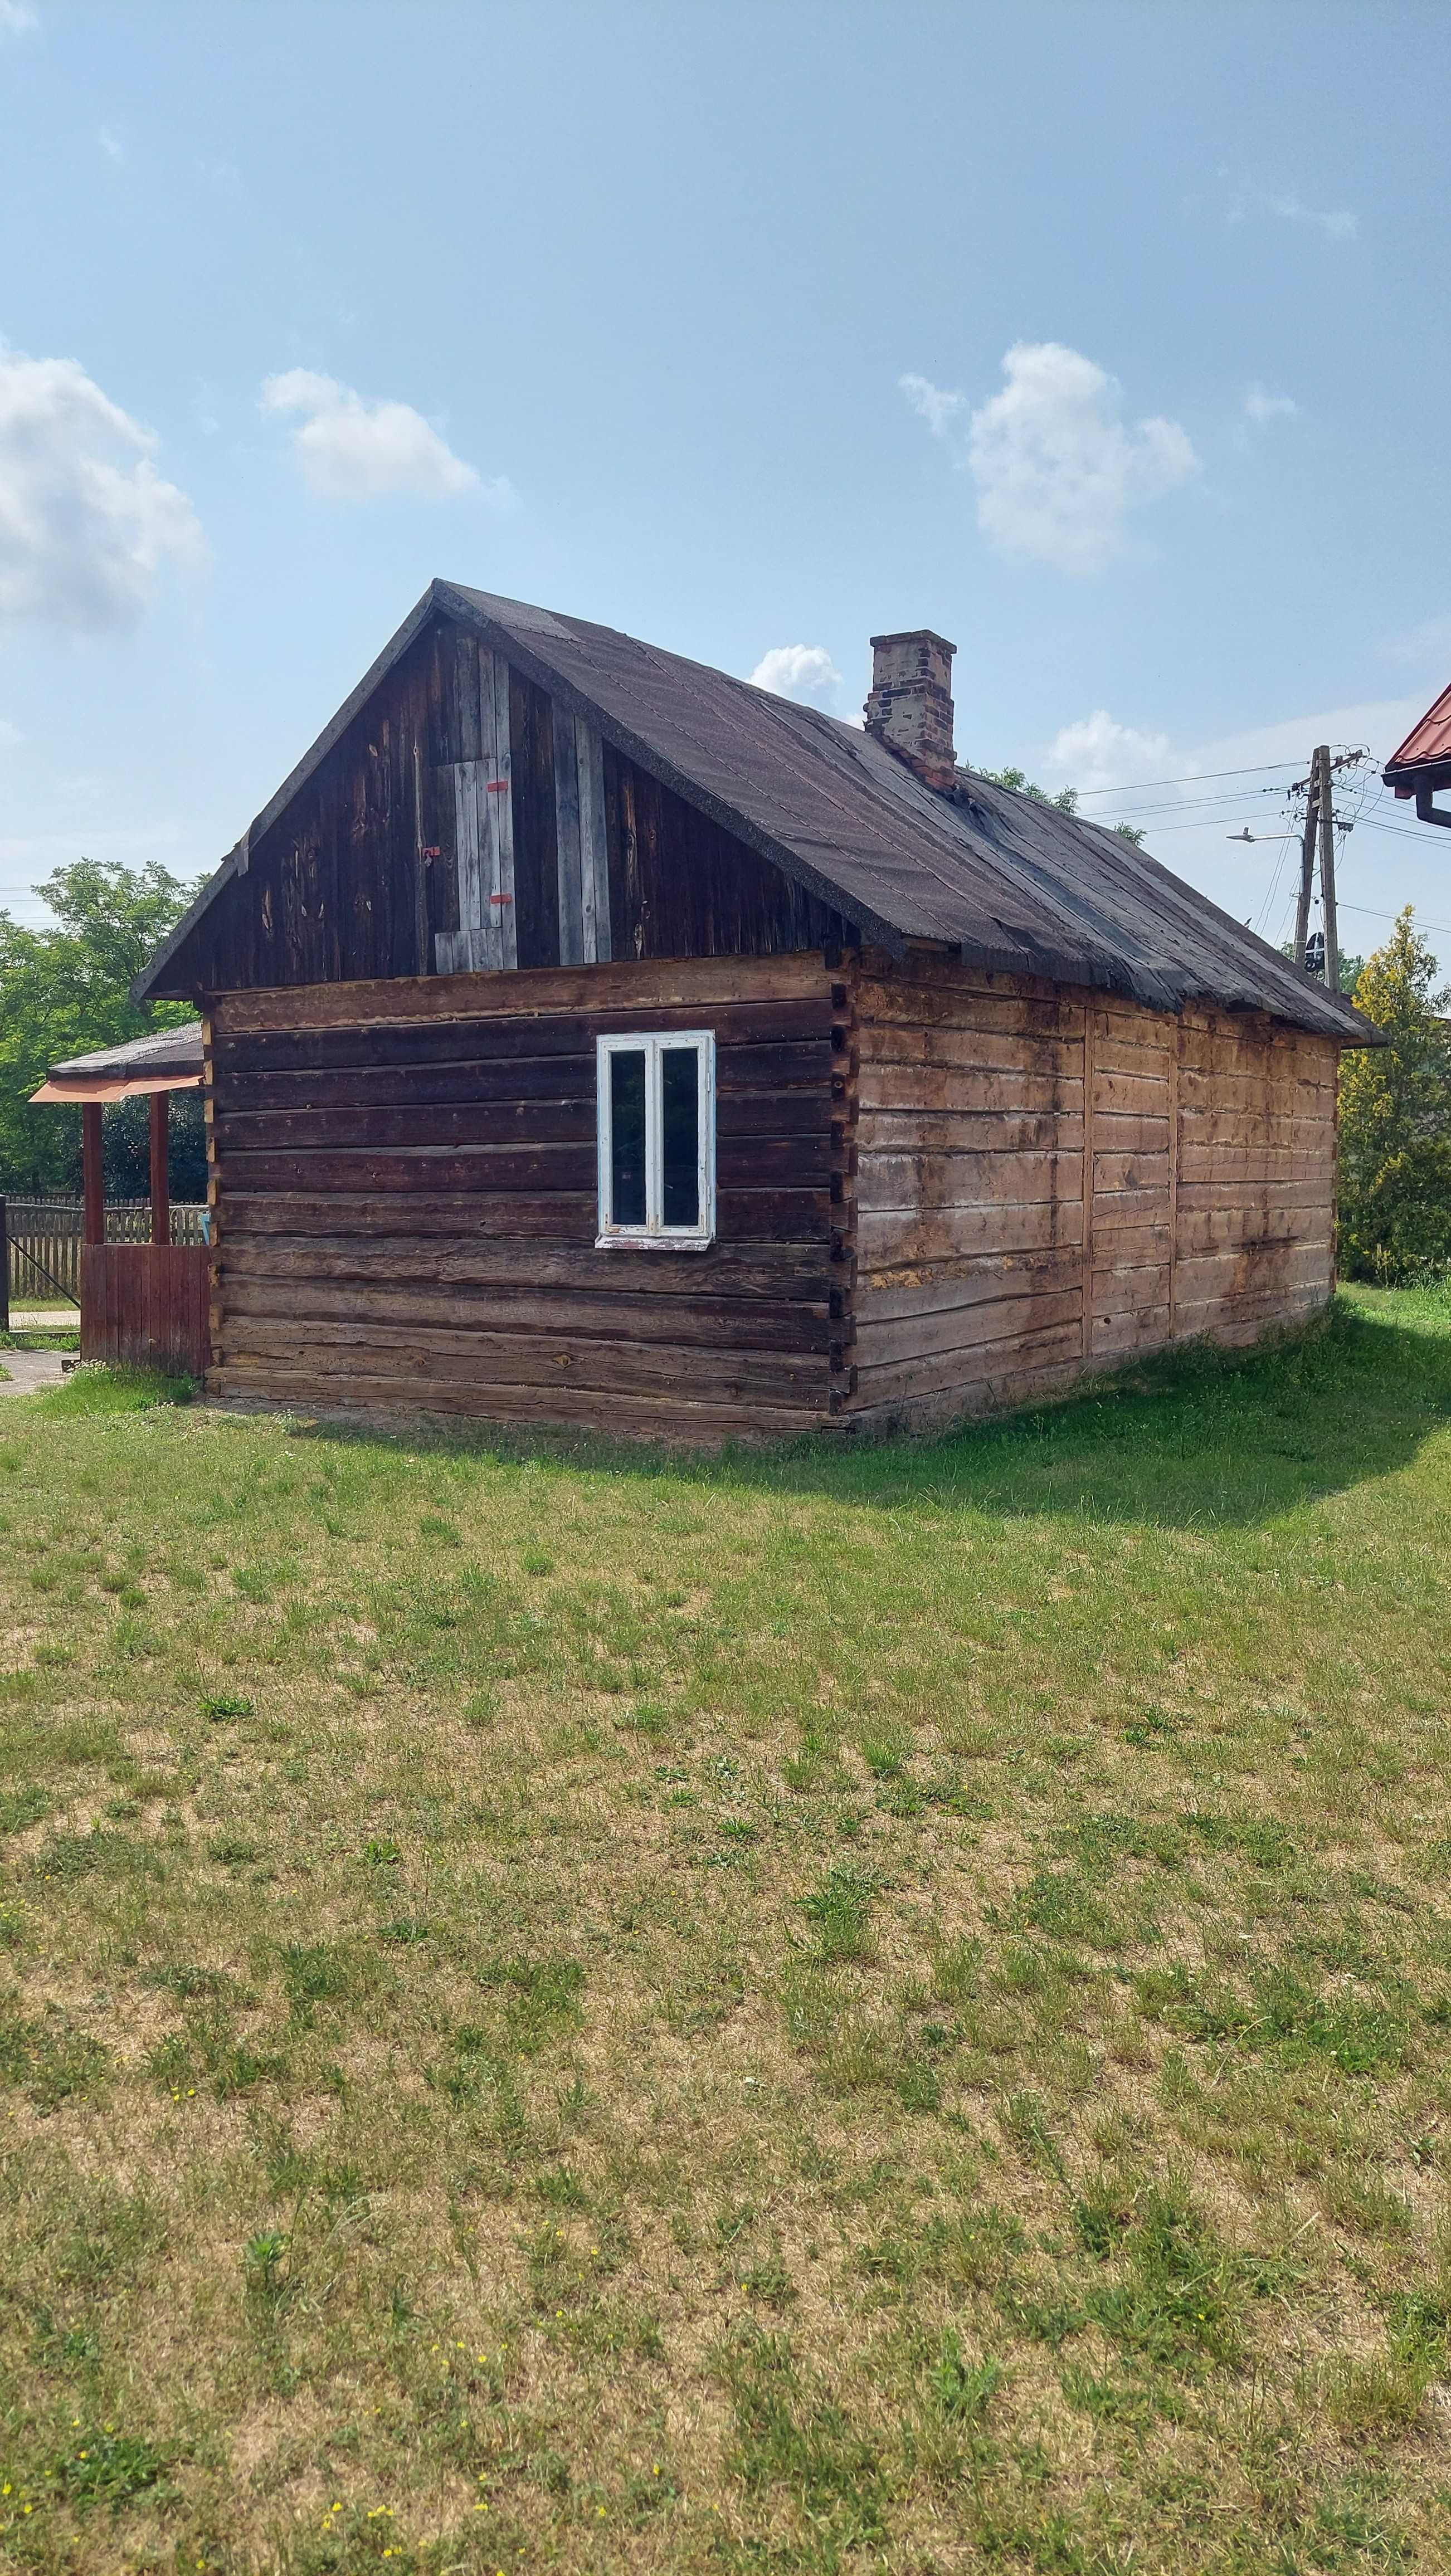 Dom drewniany z bali do przeniesienia / rozbiórki – okolice Puław